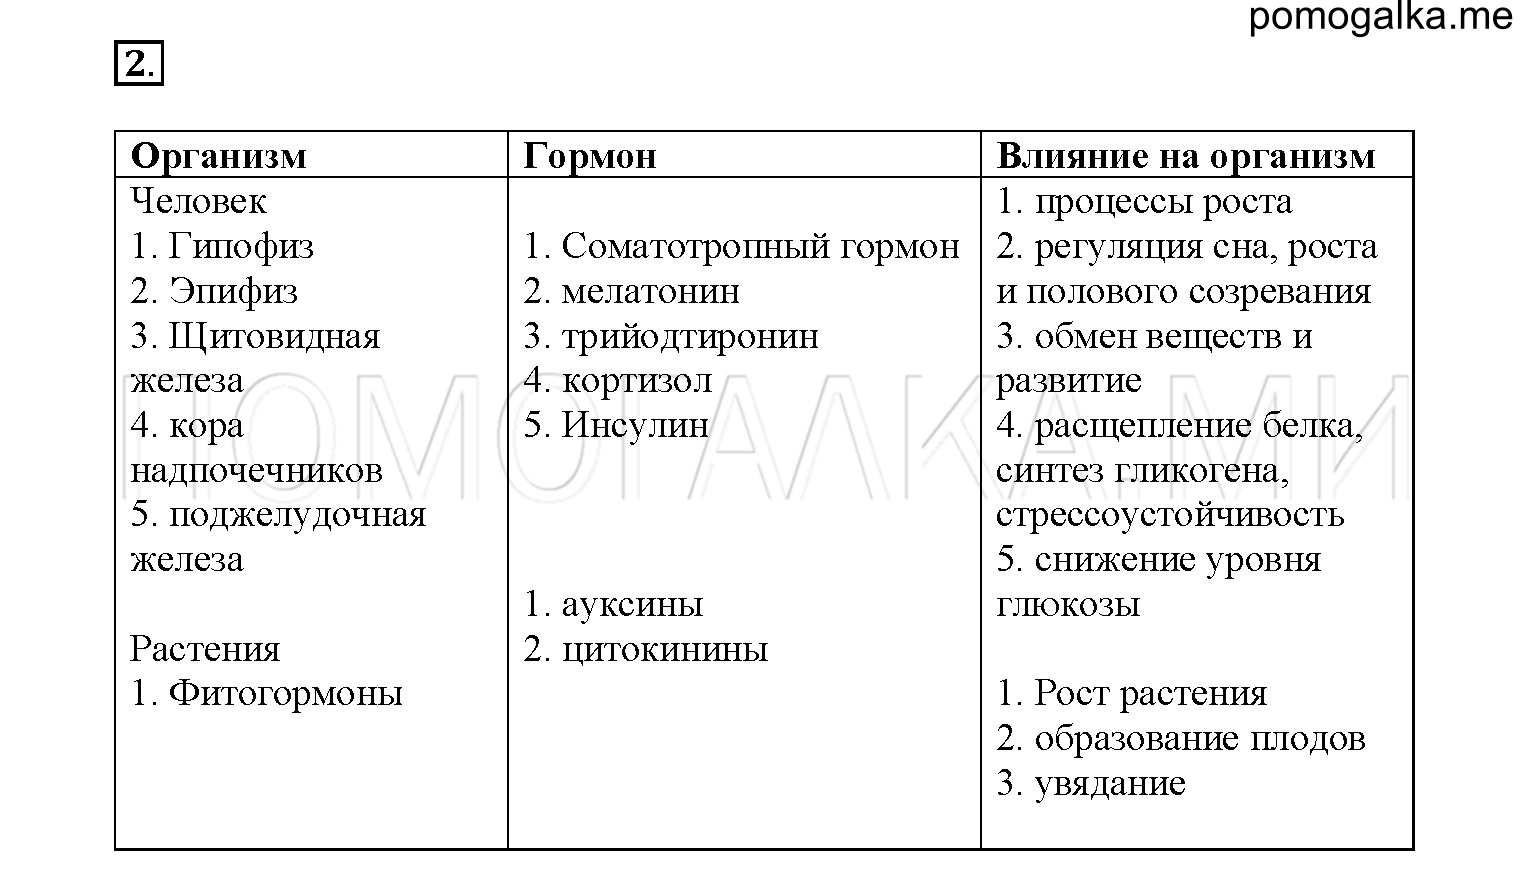 Таблица по биологии гуморальная регуляция